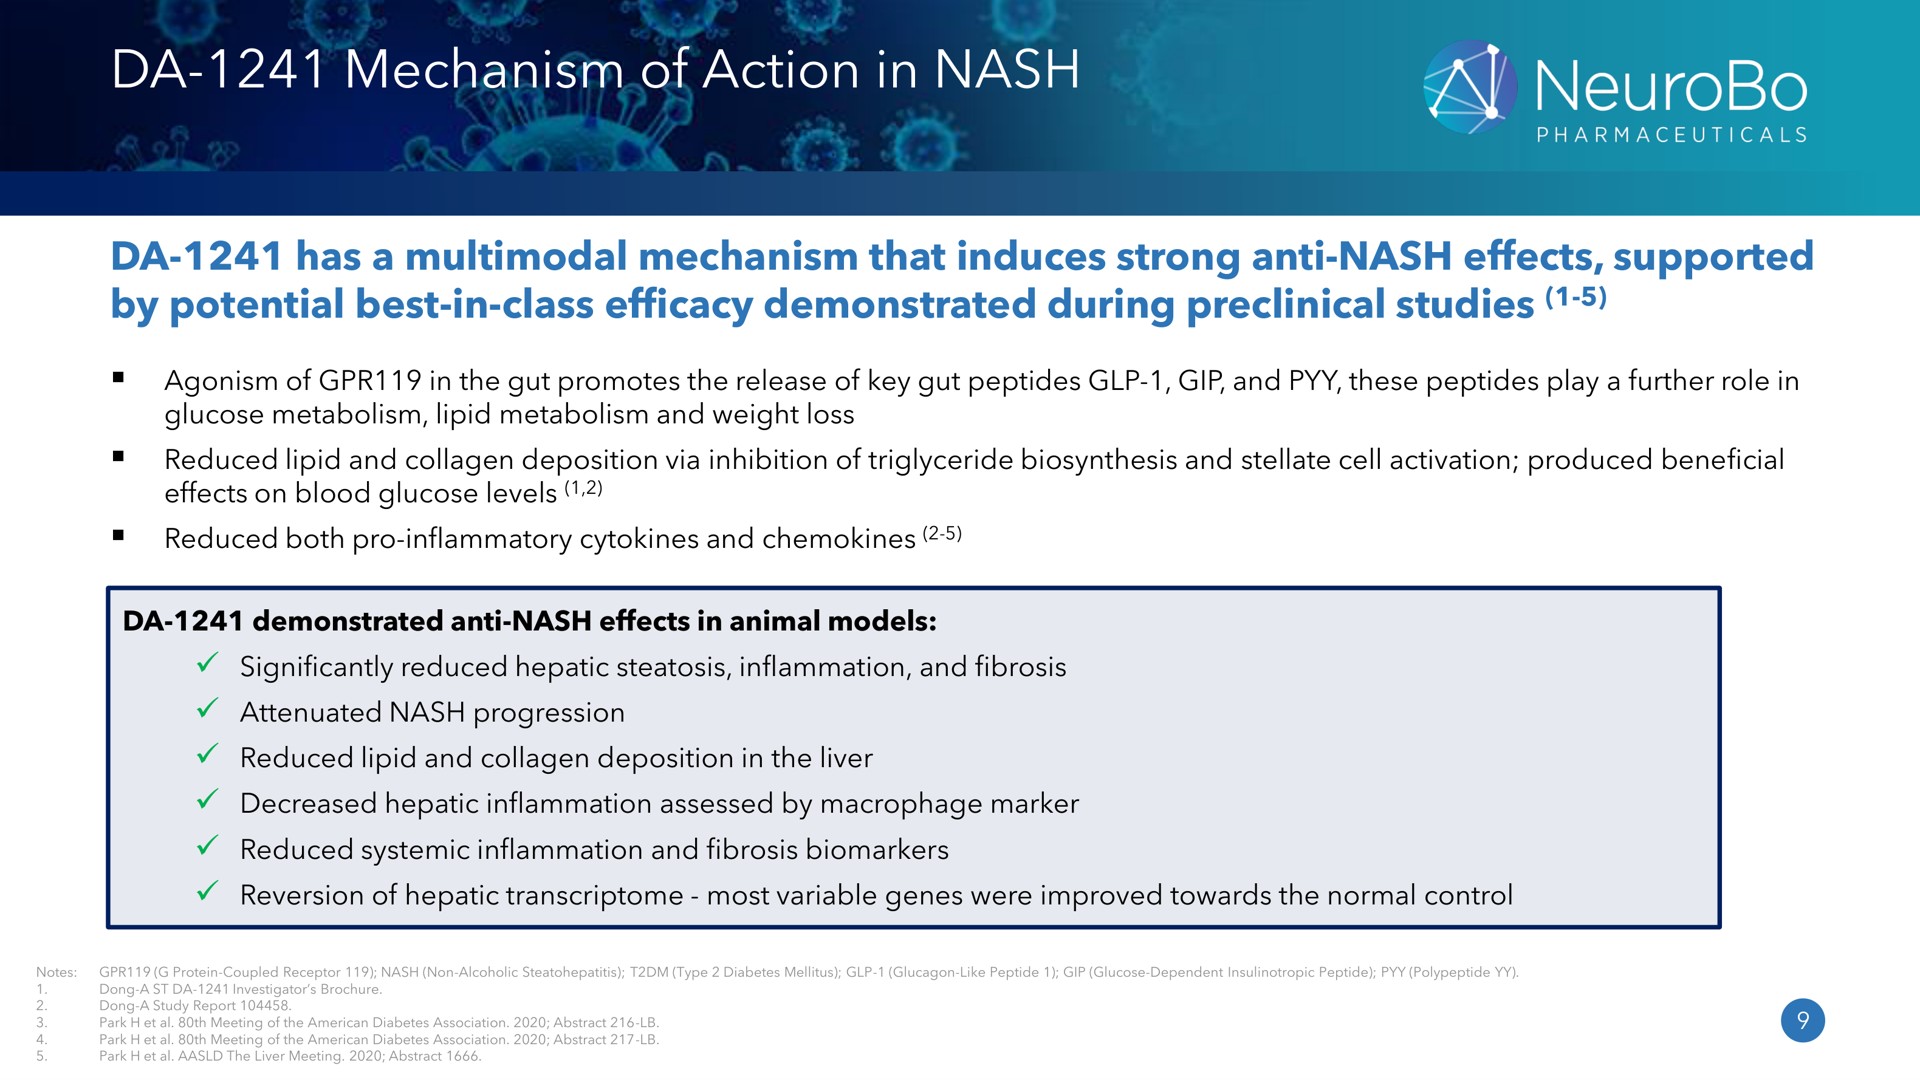 mechanism of action in nash | NeuroBo Pharmaceuticals